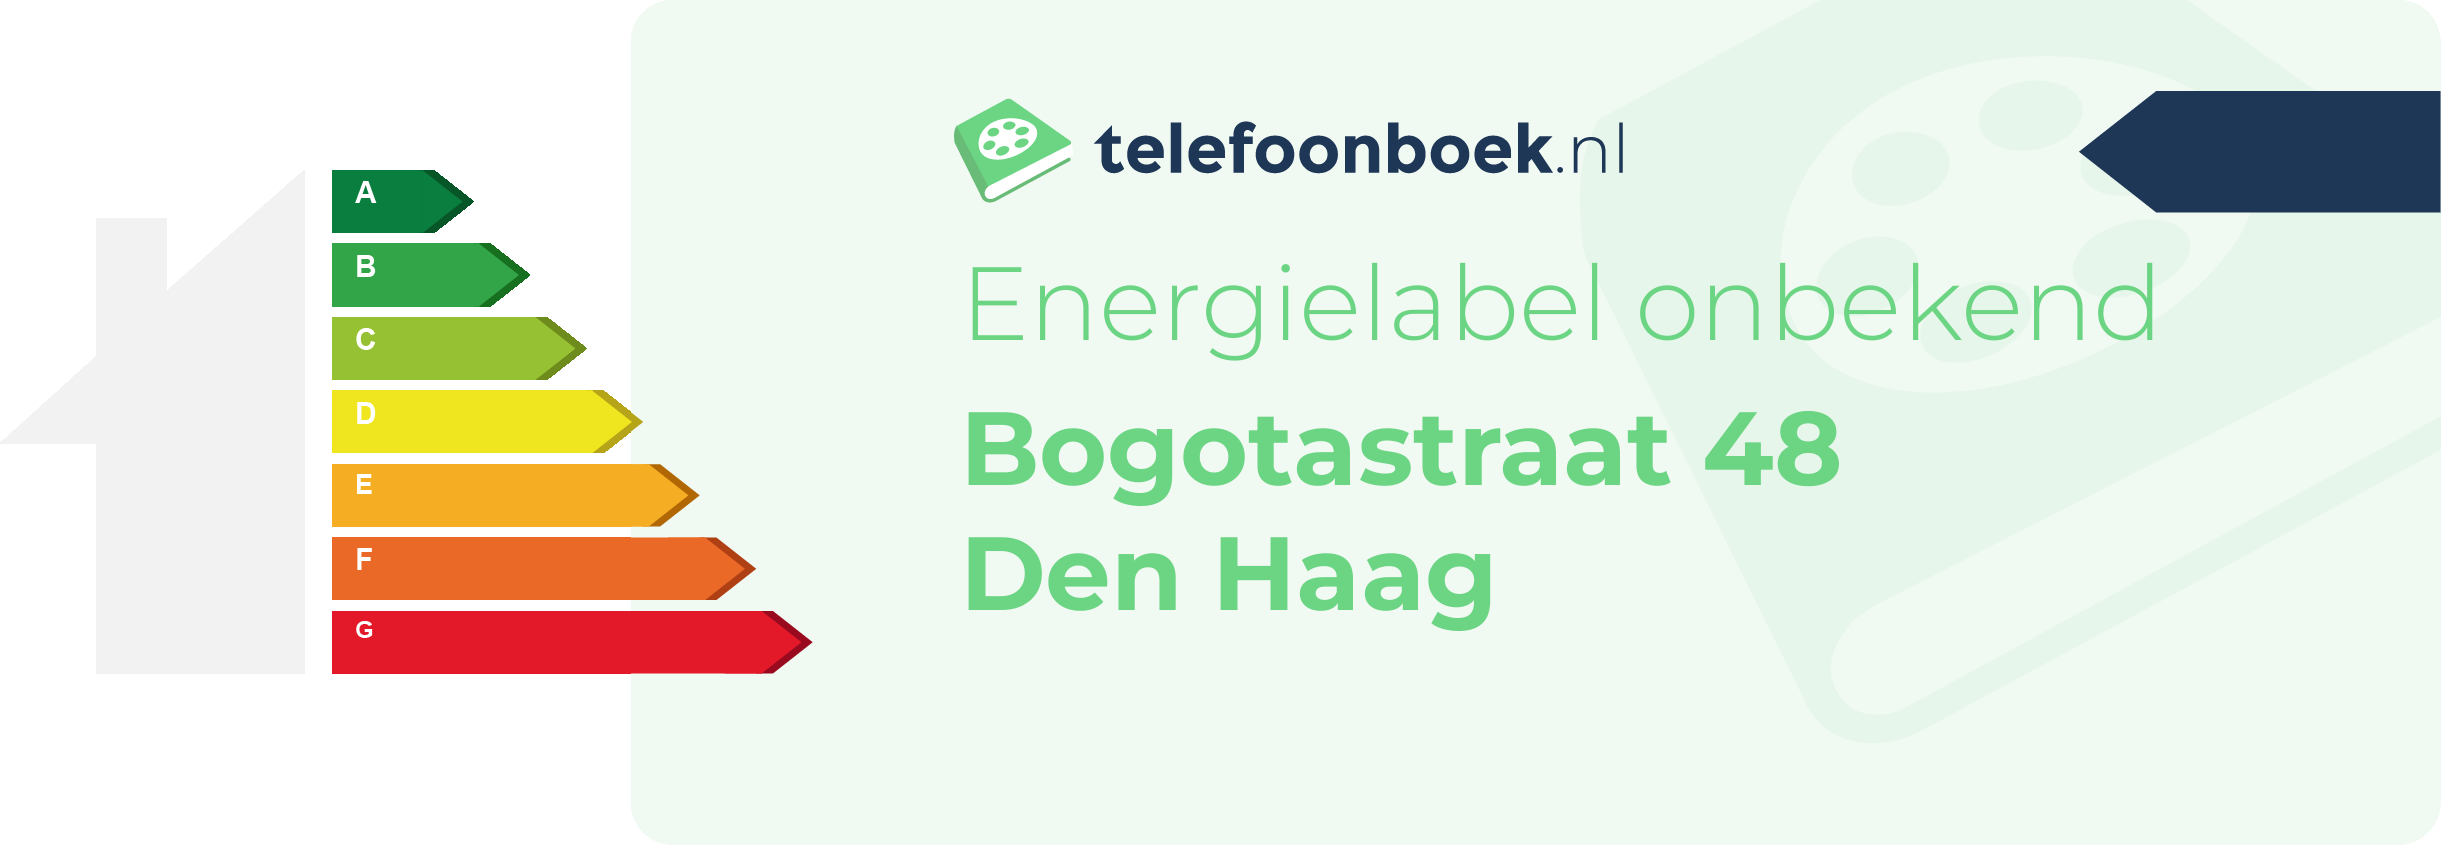 Energielabel Bogotastraat 48 Den Haag